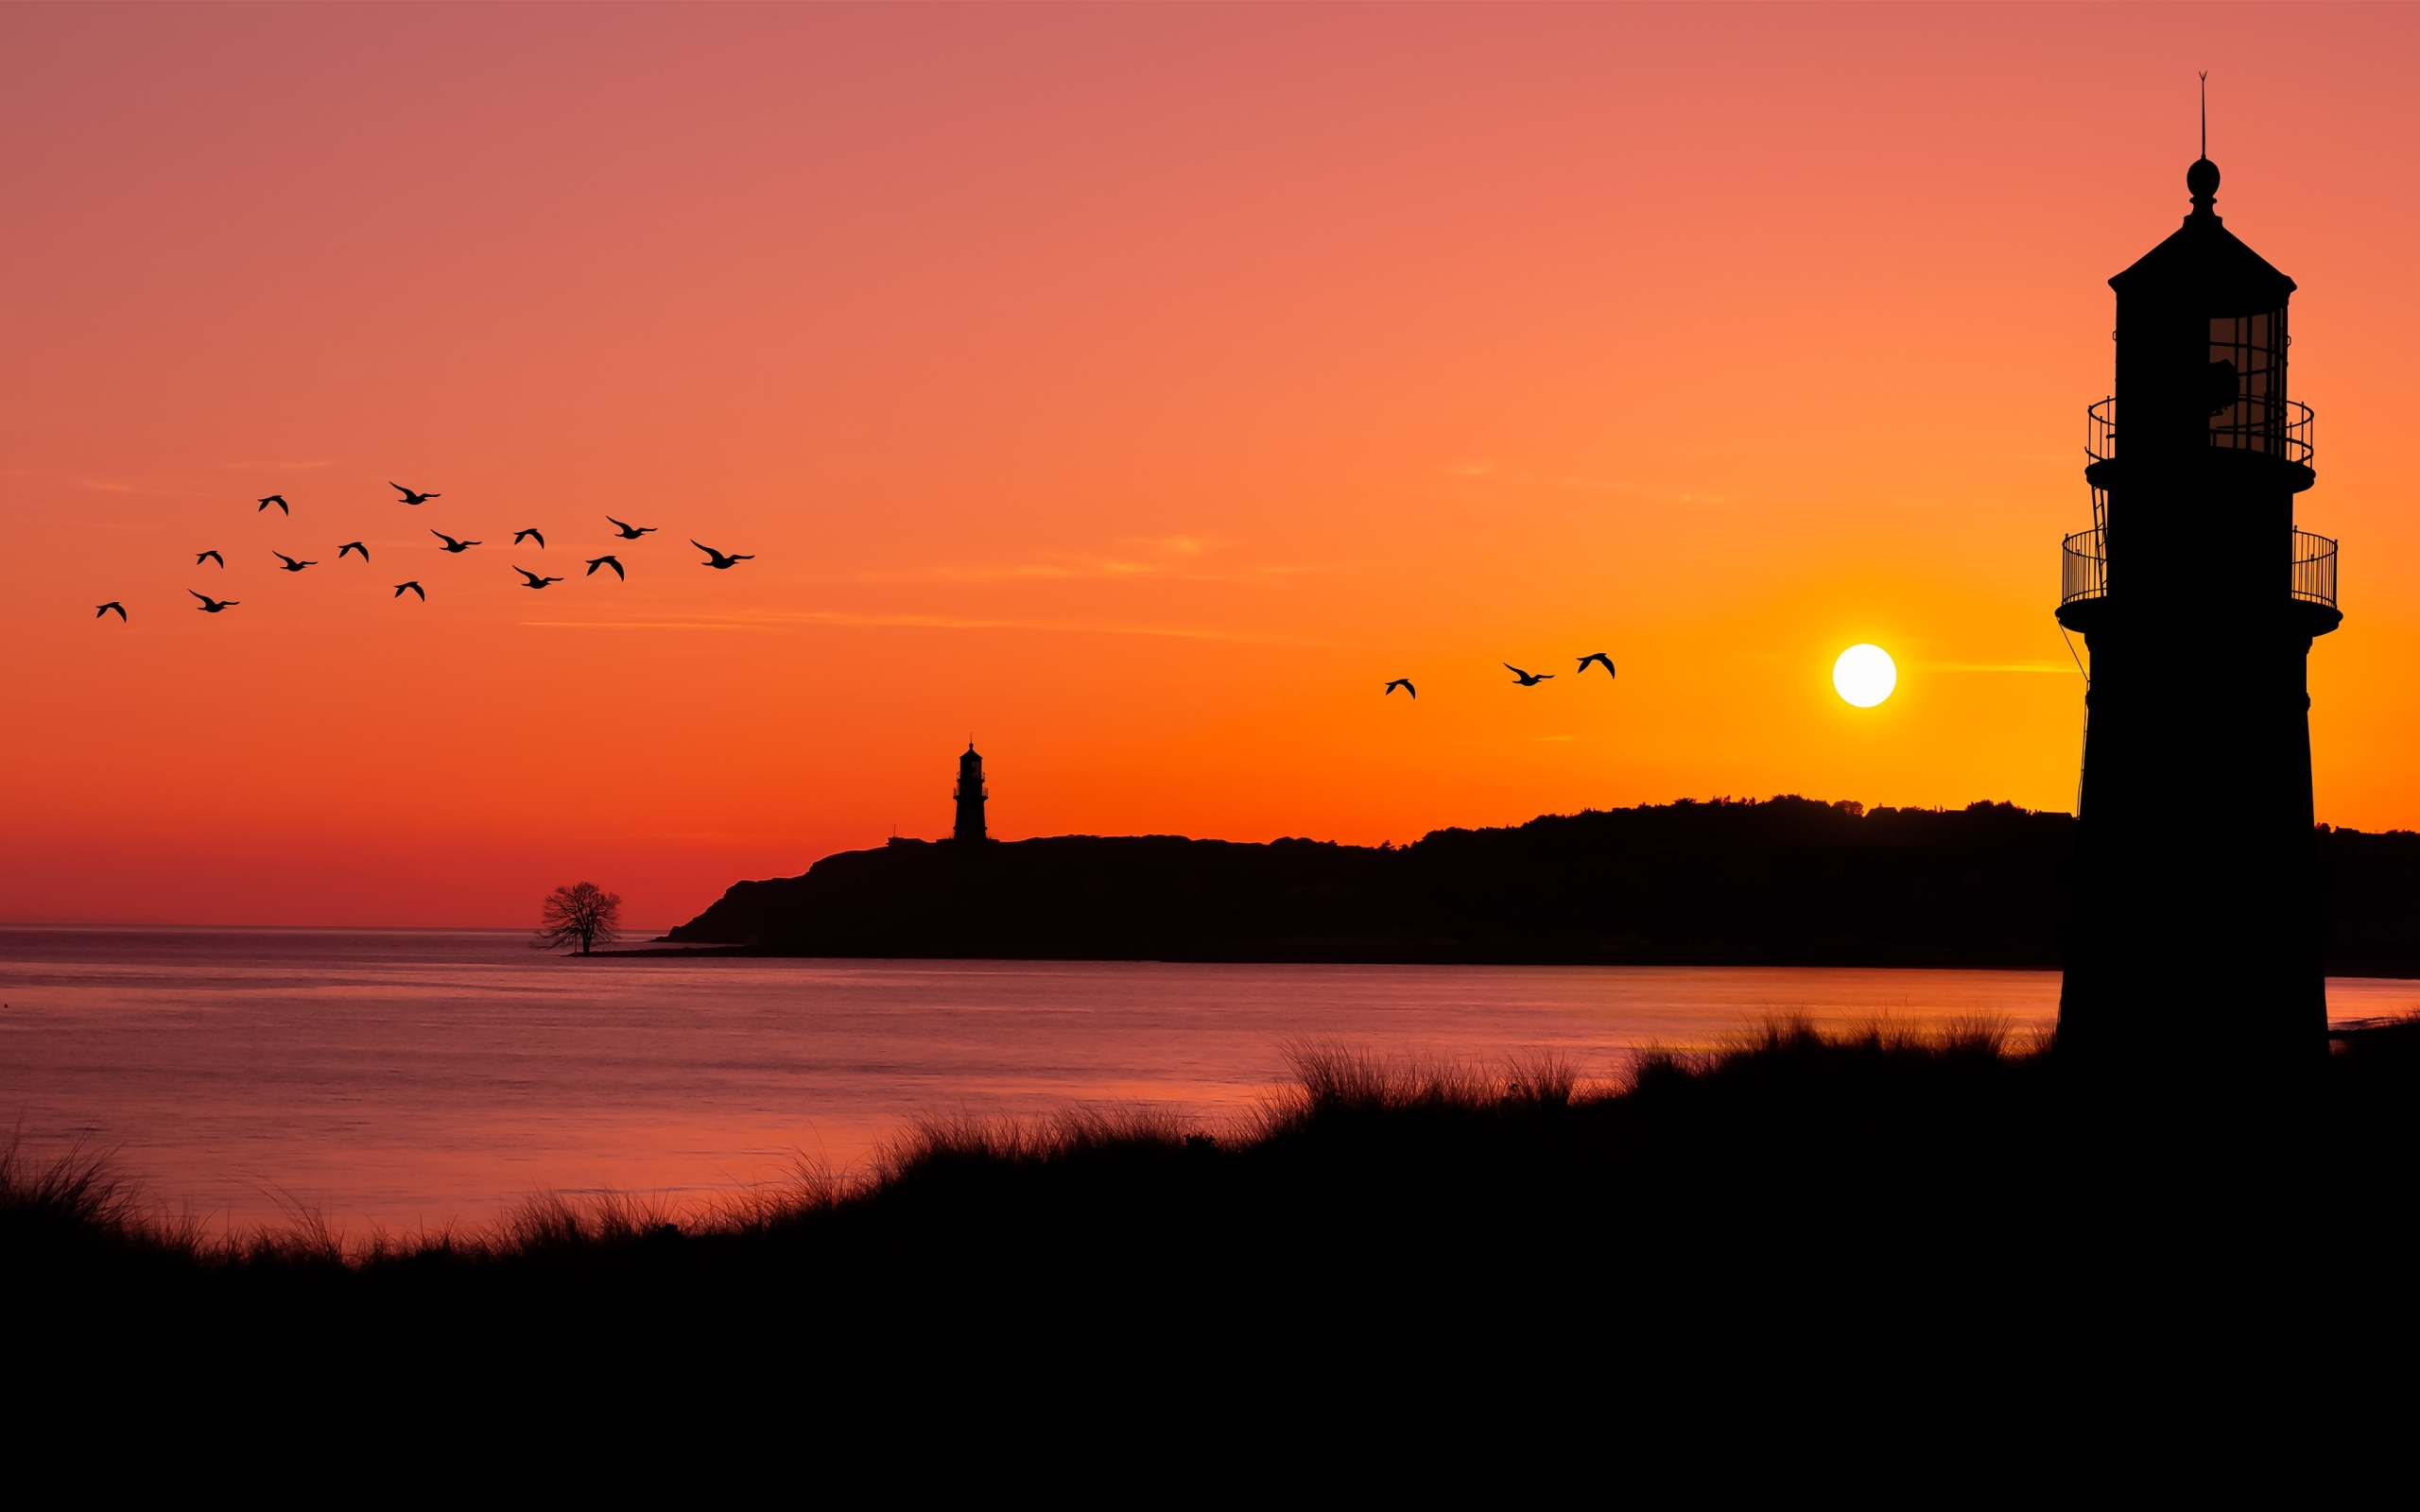 Wallpaper Of Flock Of Birds, Lighthouse, Ocean, Sunset, - Sunset Nature Background - HD Wallpaper 